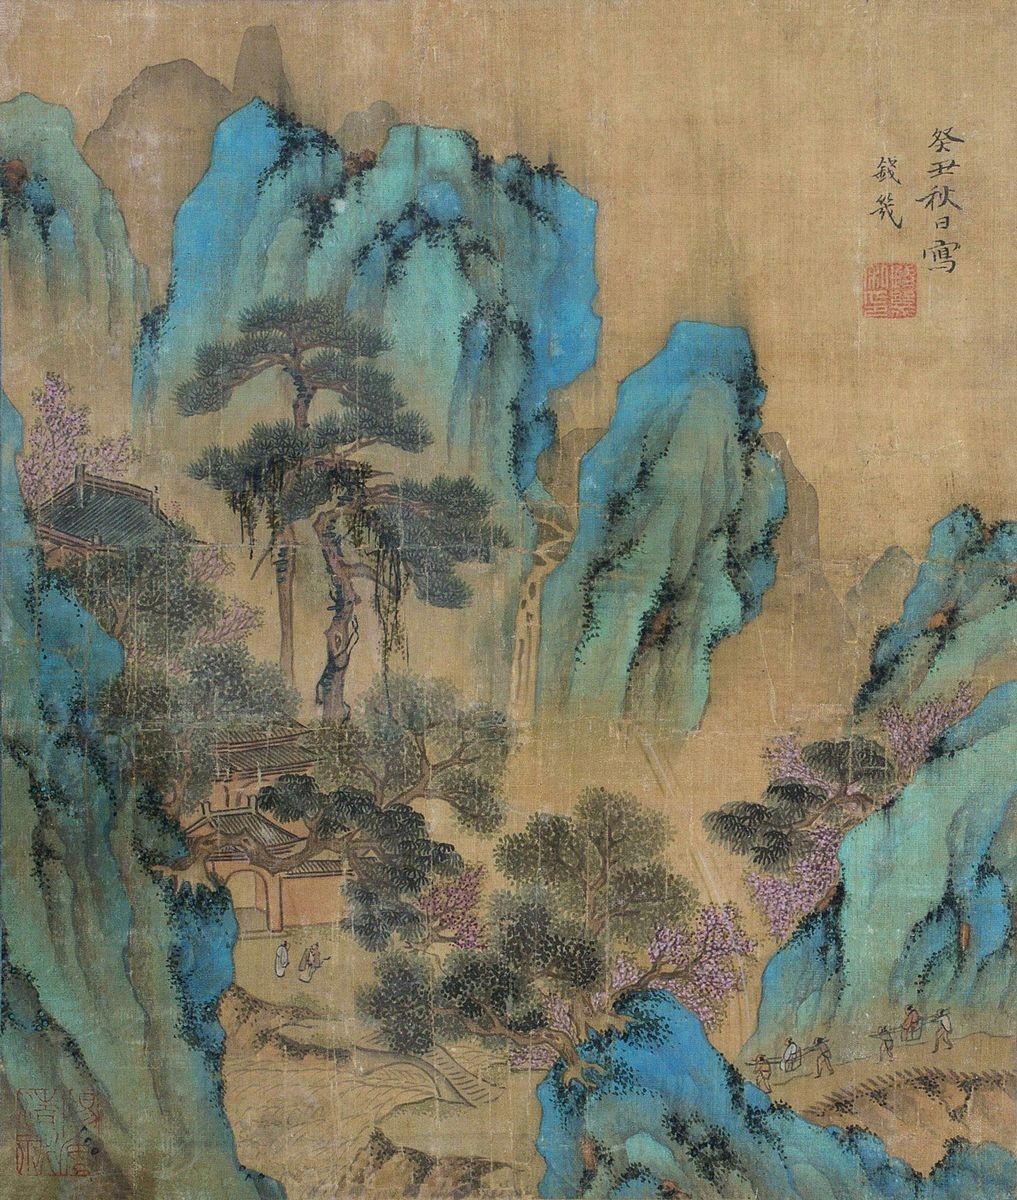 浅绛山水画:中国山水画中的一种没色技巧.